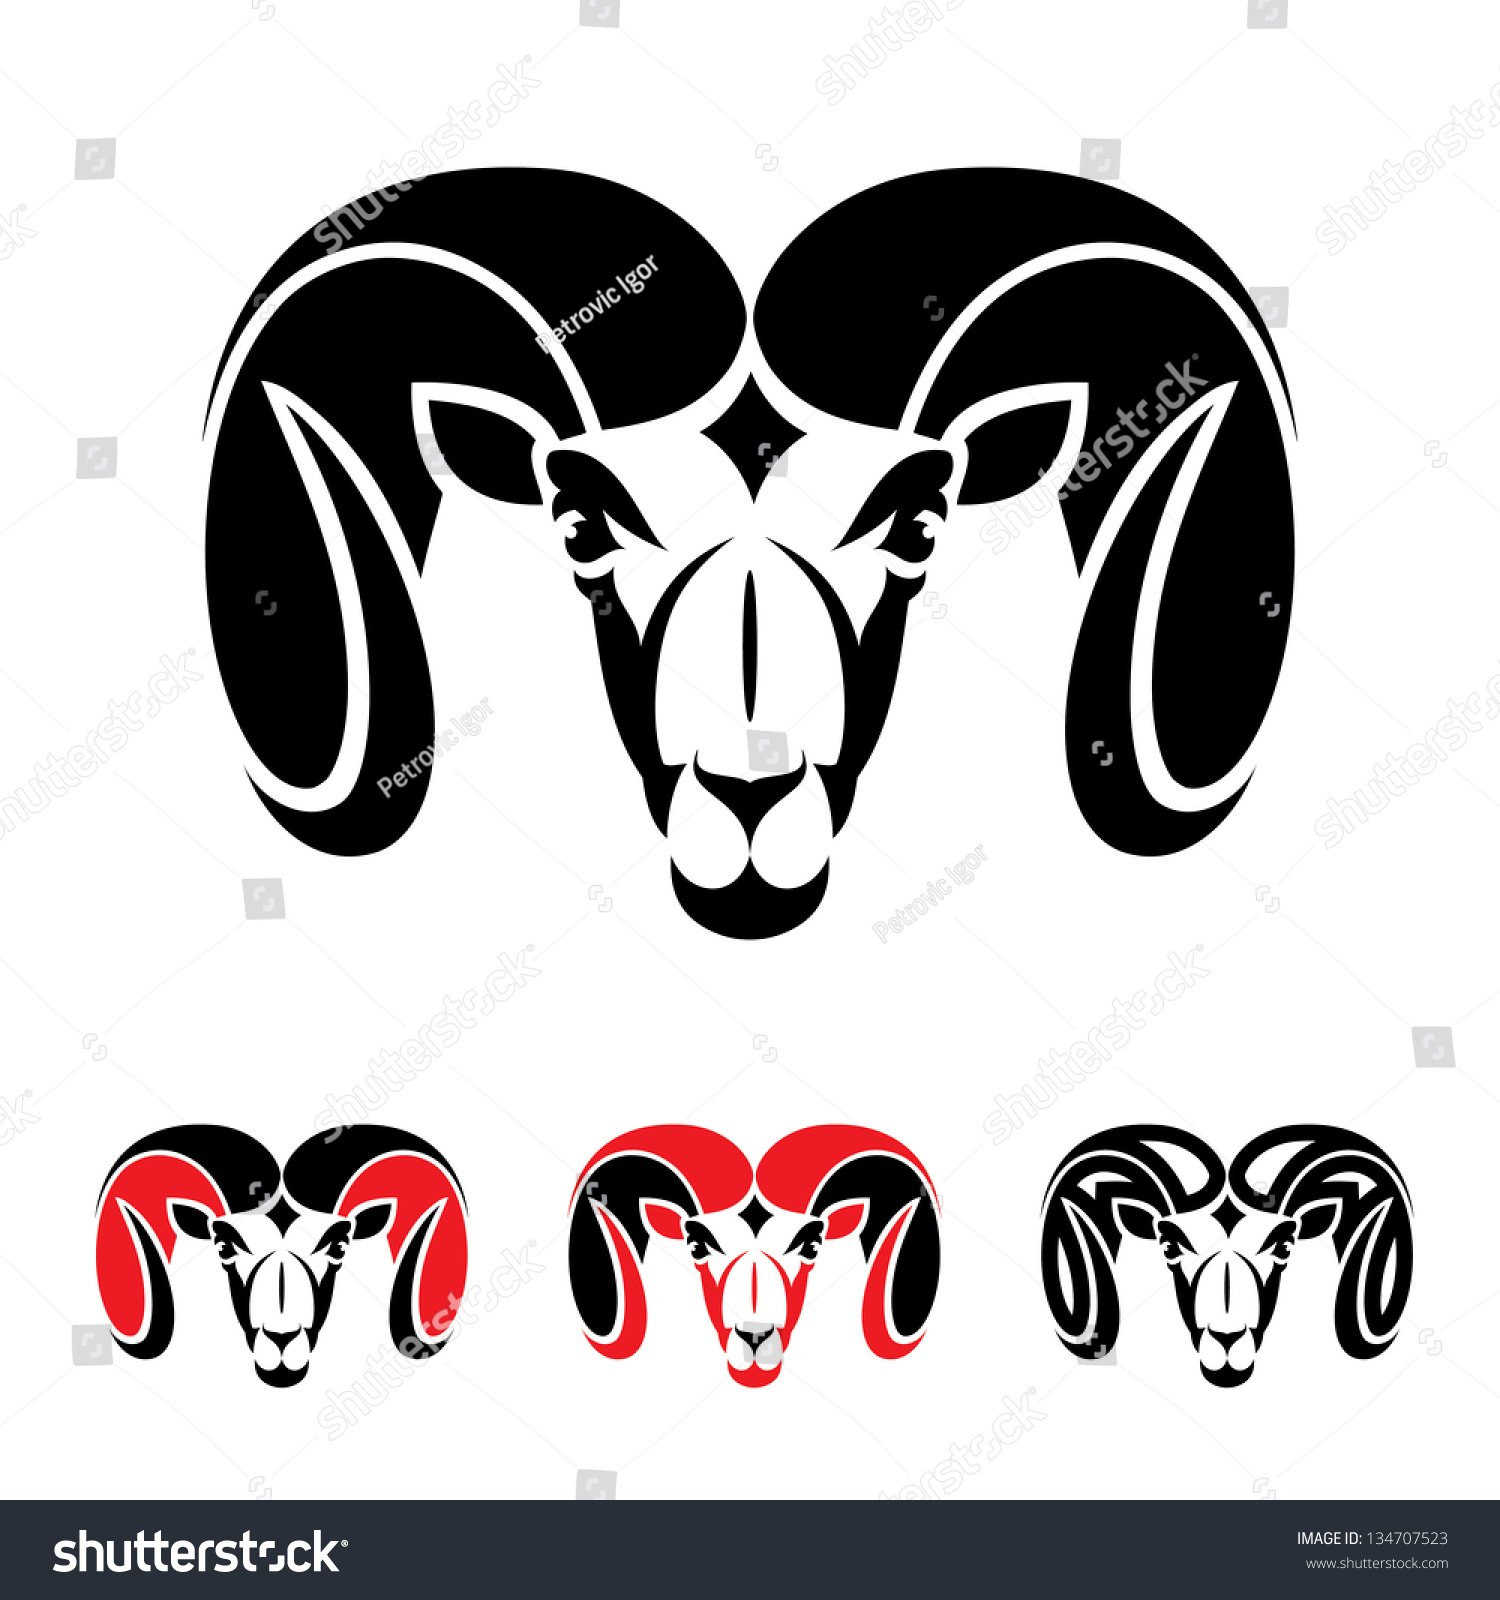 Ram Animal Vector Illustration Stock Vector 134707523 - Shutterstock